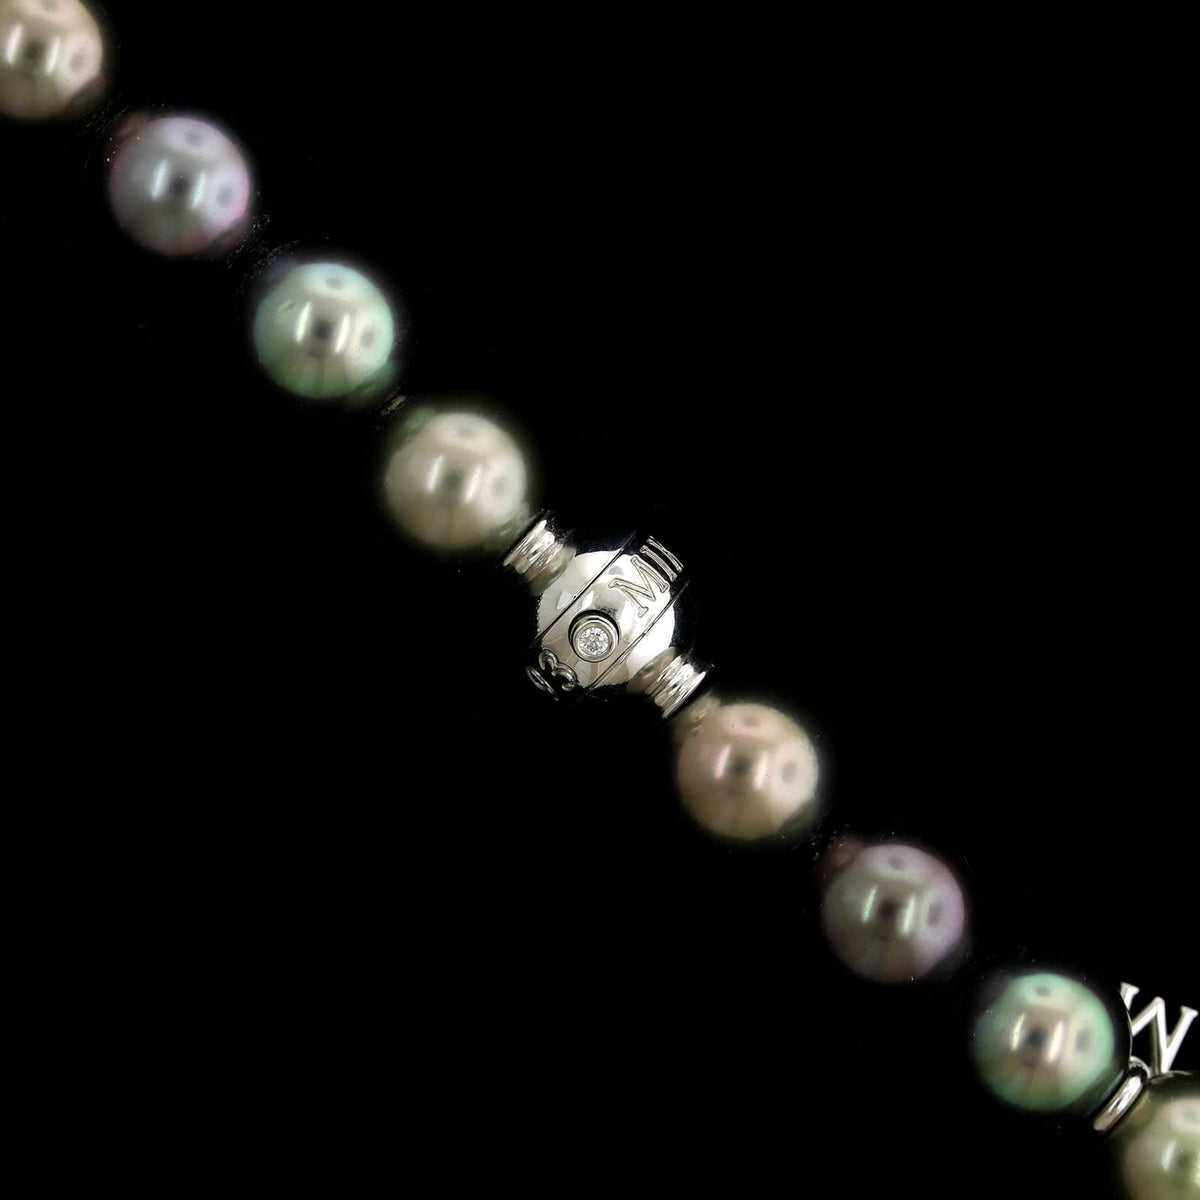 Mikimoto Estate Cultured Black South Sea Pearl Multi-colored Necklace